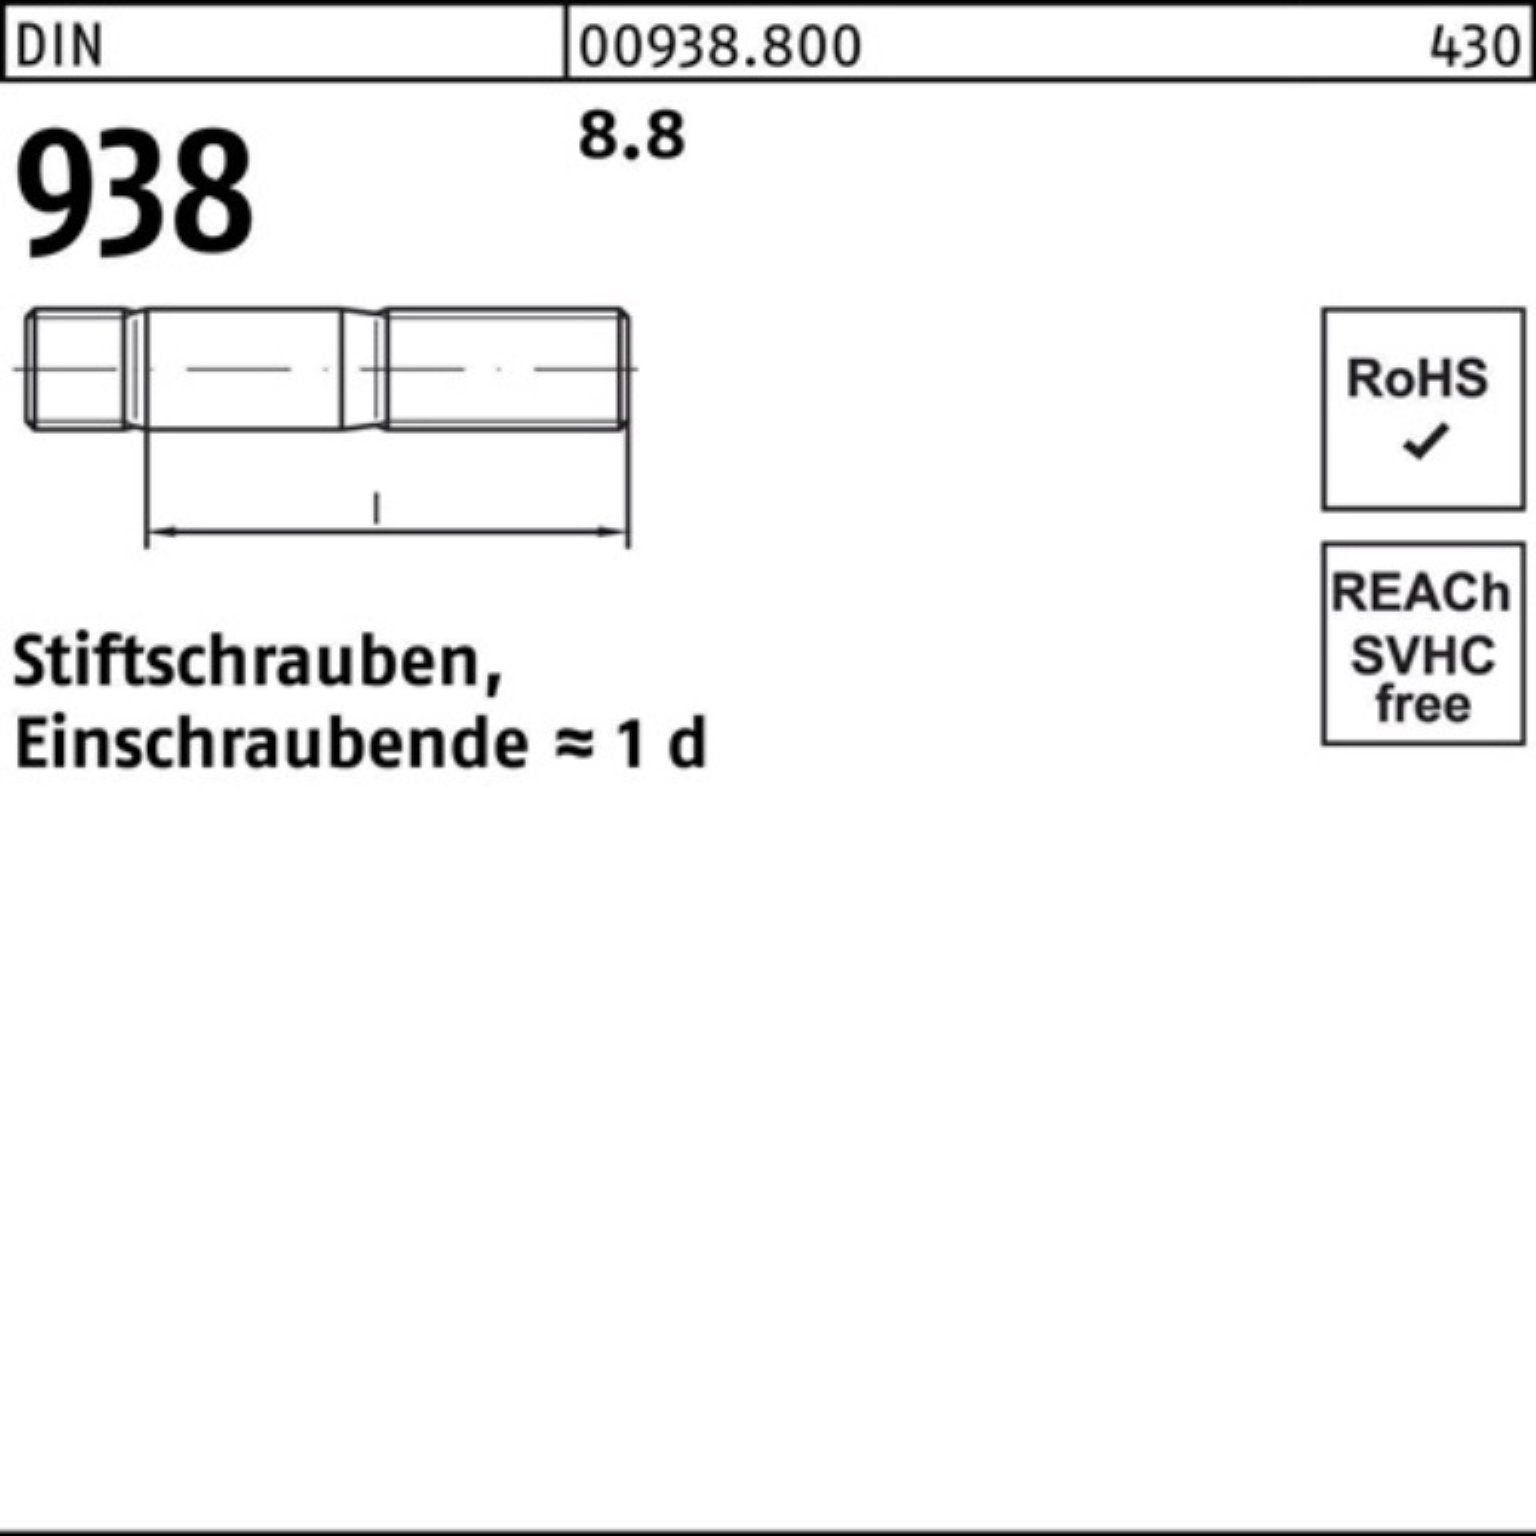 Reyher 100er Stiftschraube Stiftschraube 70 Sti 8.8 M20x DIN Pack Stück 938 8.8 10 938 DIN